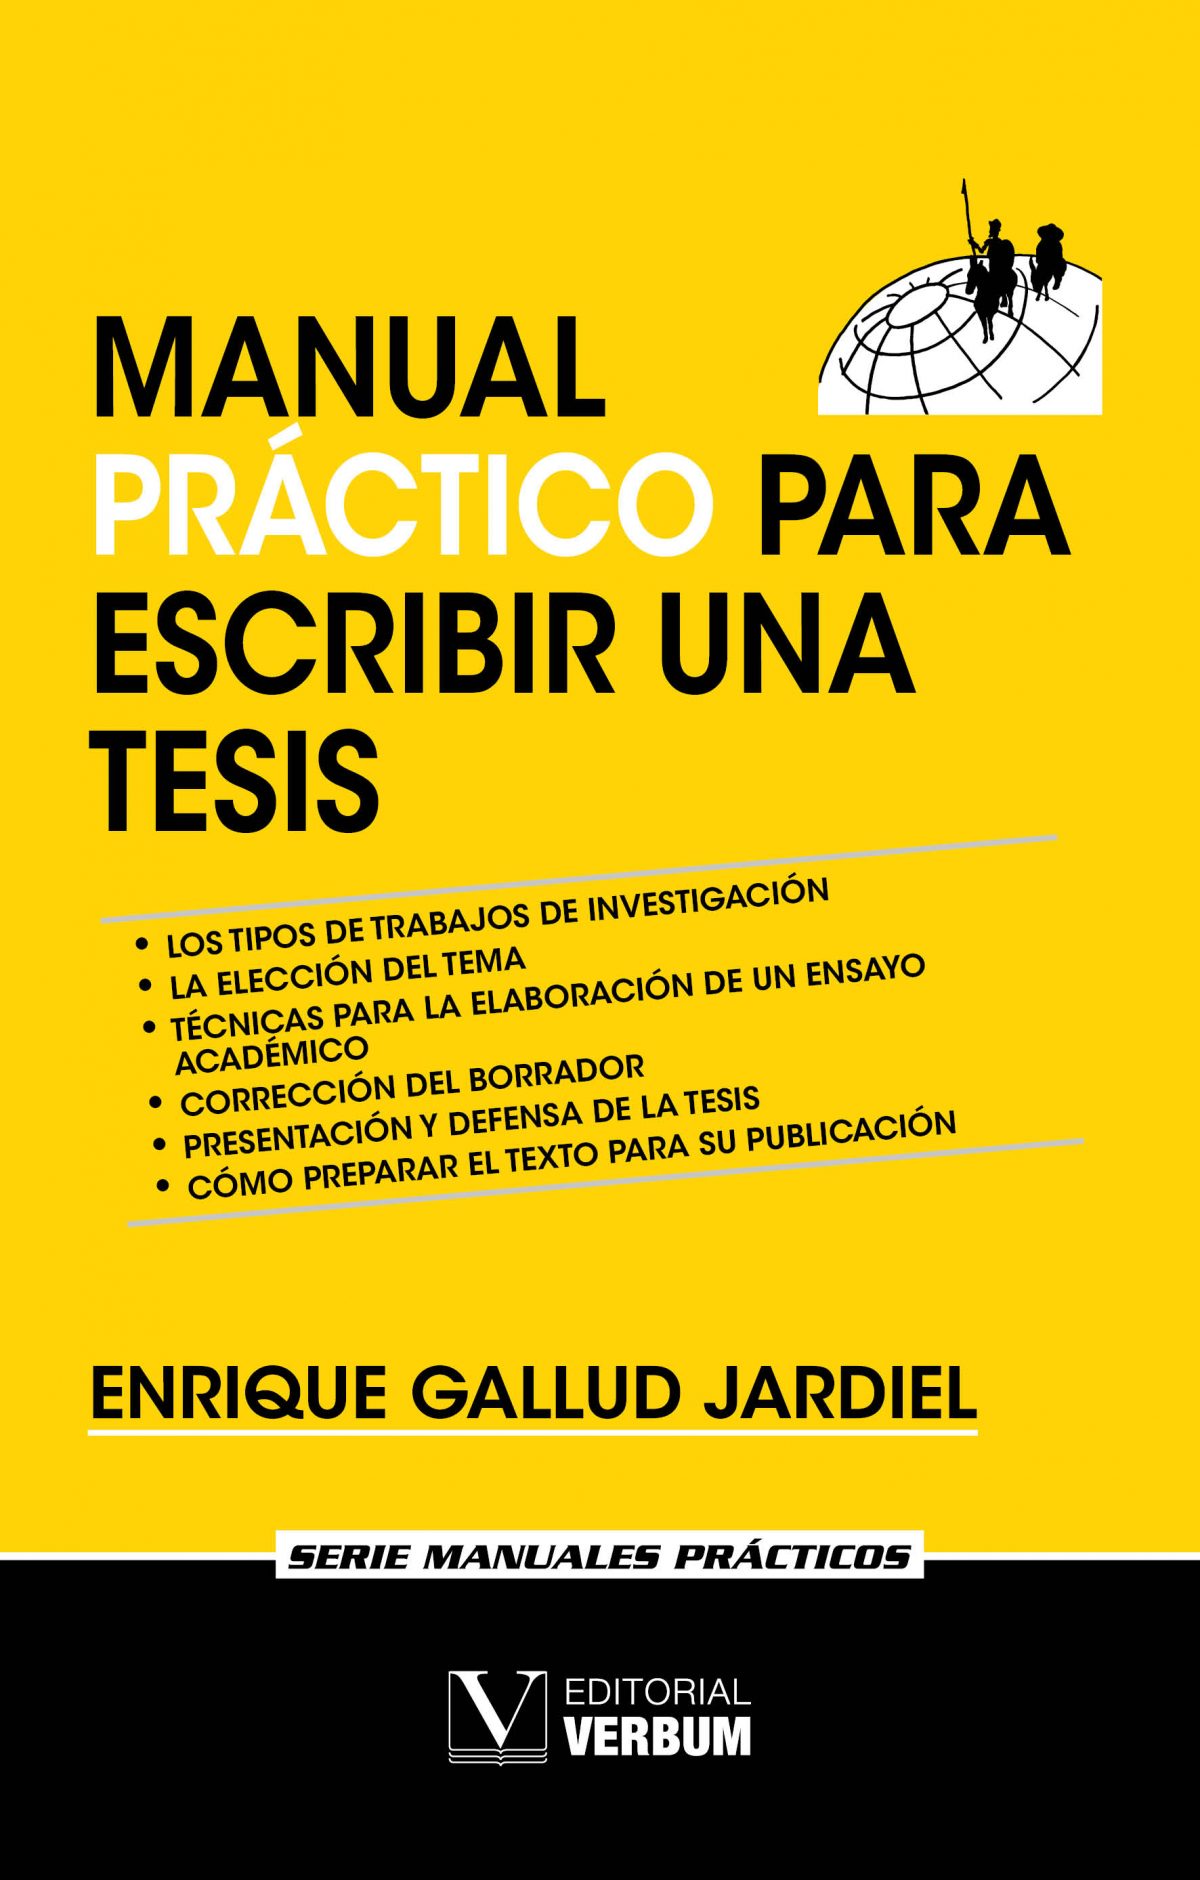 Manual Práctico Para Escribir Una Tesis Editorial Verbum 5766